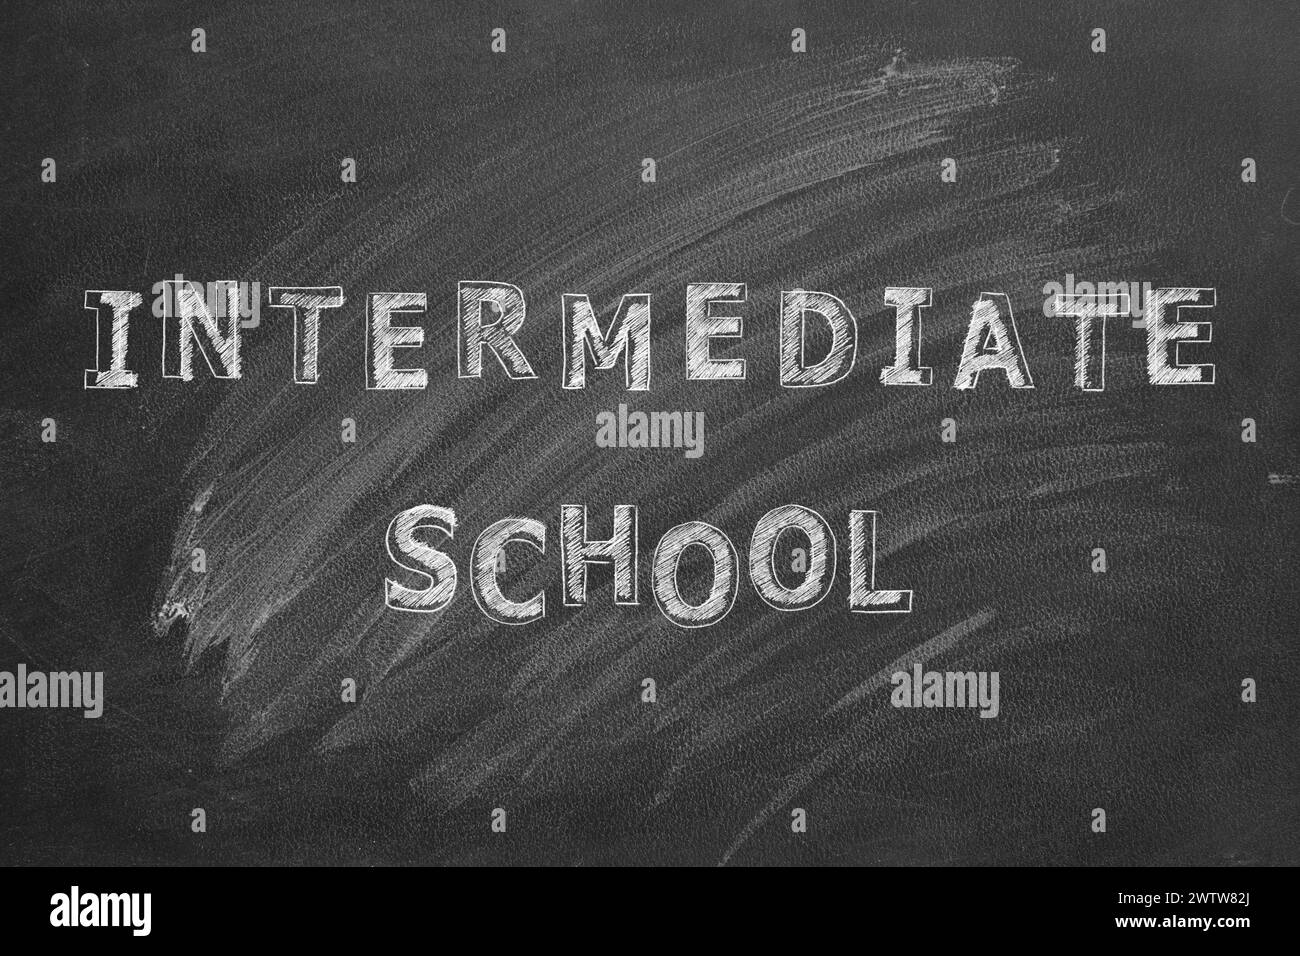 Lettering Intermediate school on black chalkboard. Stock Photo